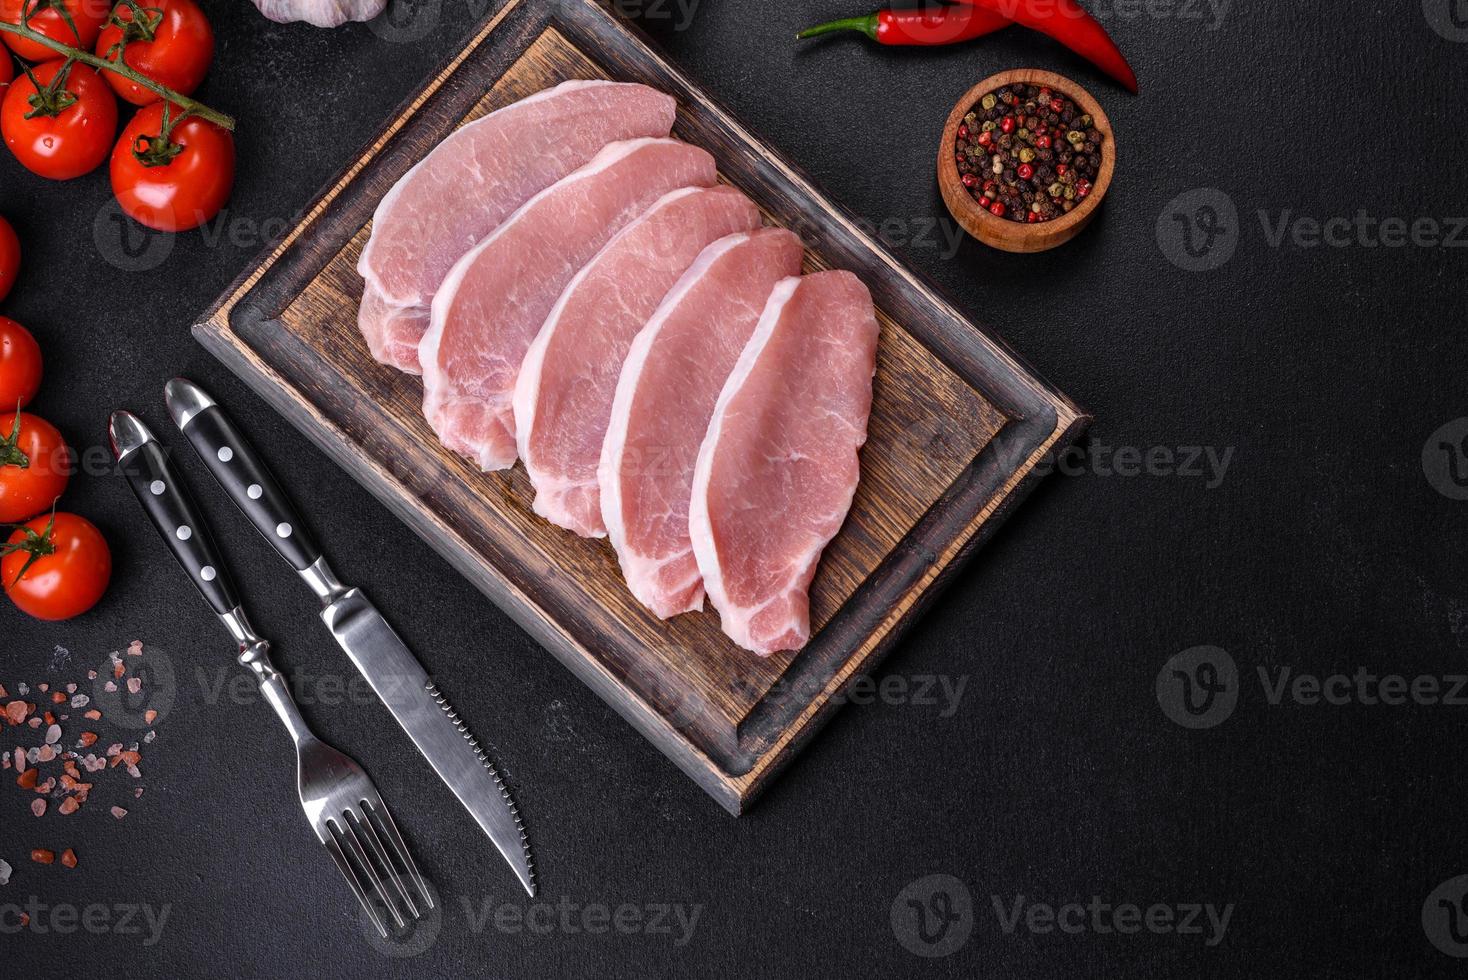 viande de porc fraîche crue tranchée sur une planche à découper en bois photo